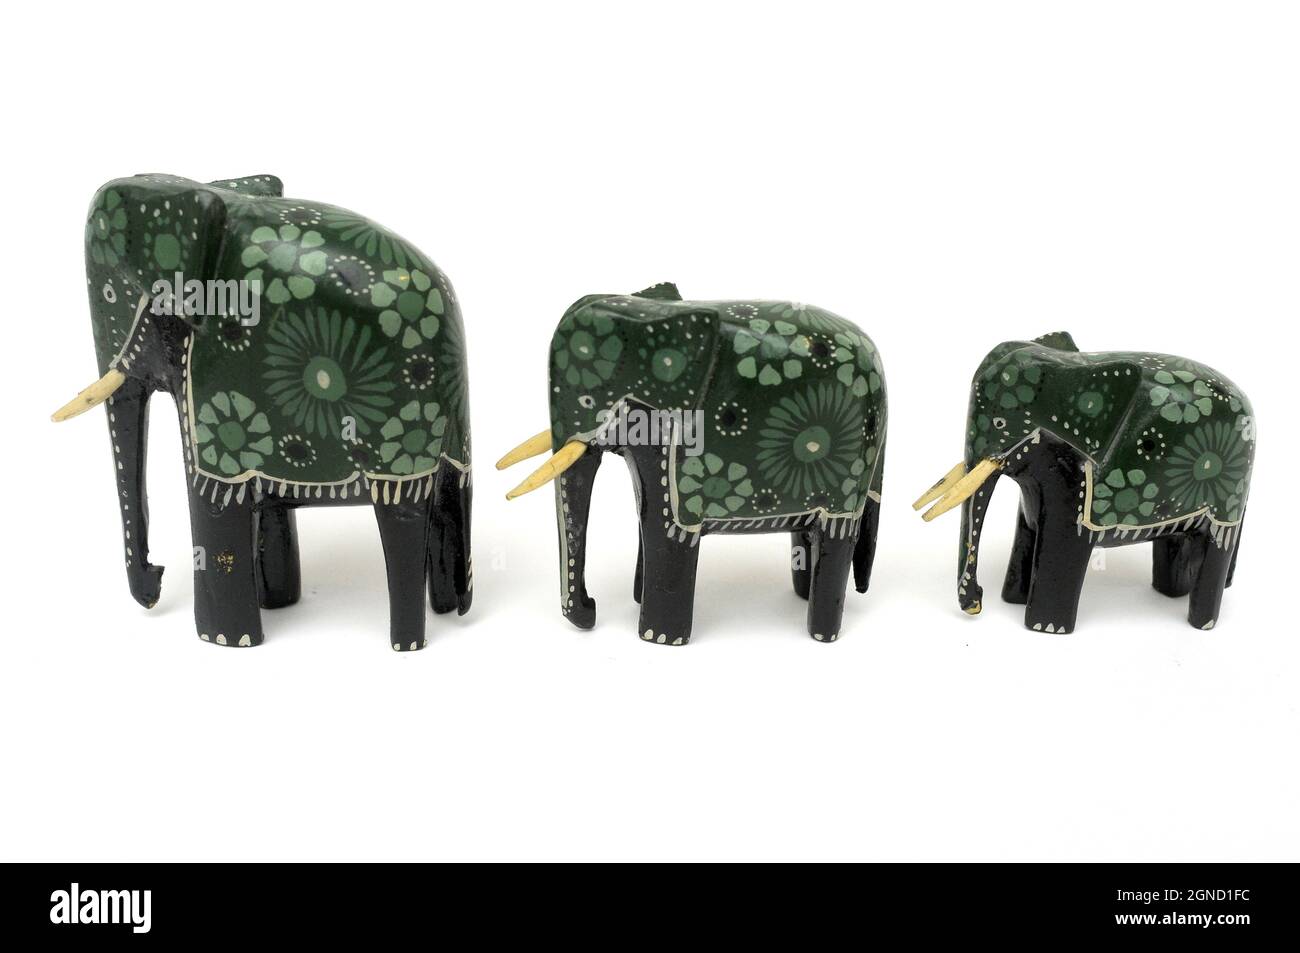 Familia de elefantes, elefantes de madera, tres elefantes, elefantes de madera pintados a mano, artesanía, Elefantes africanos, África de recuerdo, elefantes pintados, Foto de stock